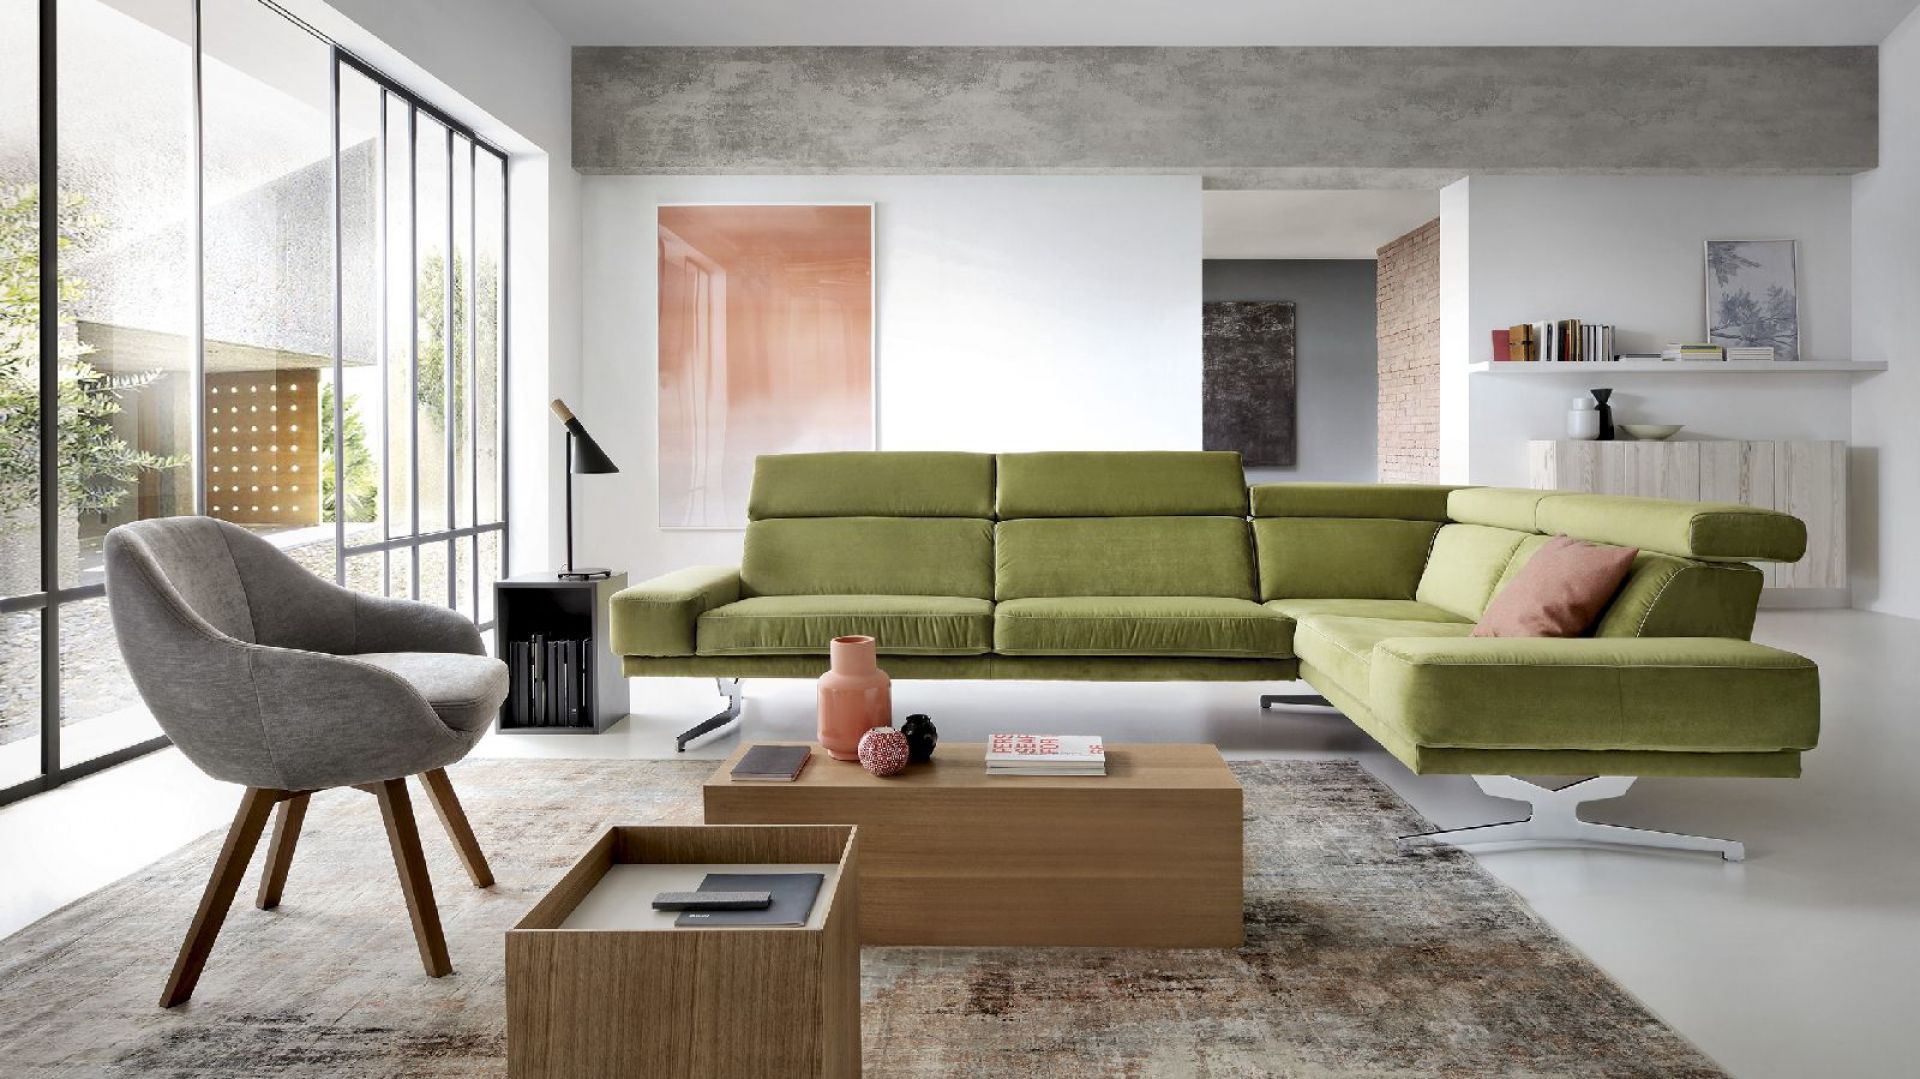 Meble do salonu: zielona sofa - zapowiedź wiosny we wnętrzu